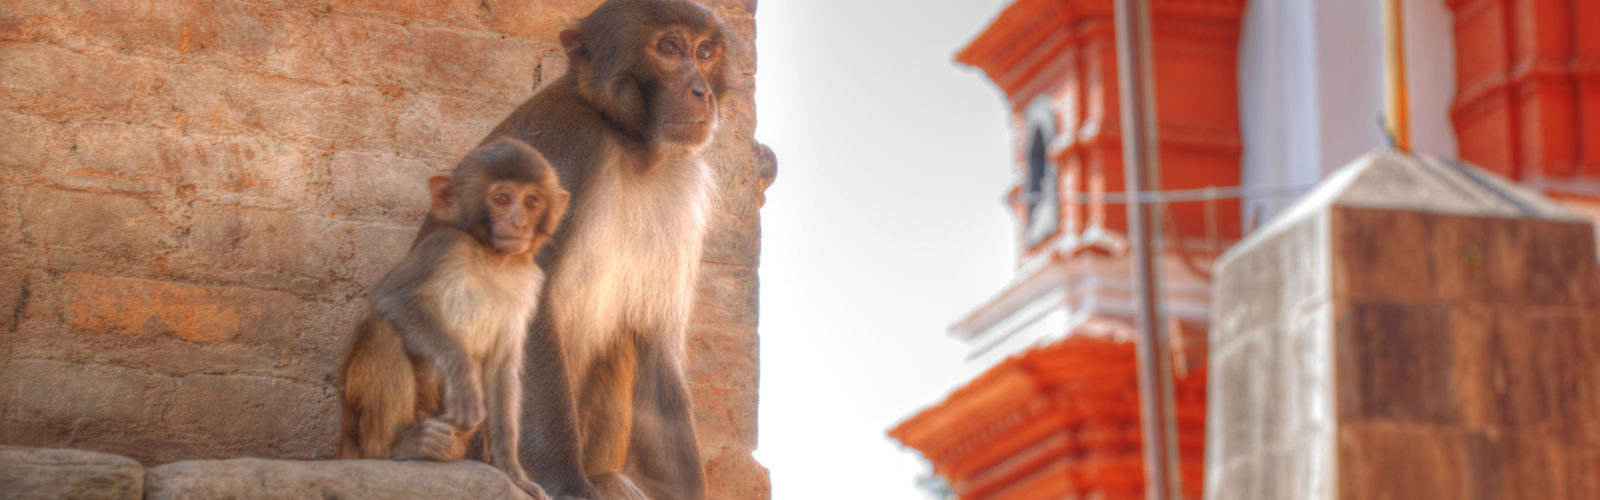 pashupatinath-monkeys